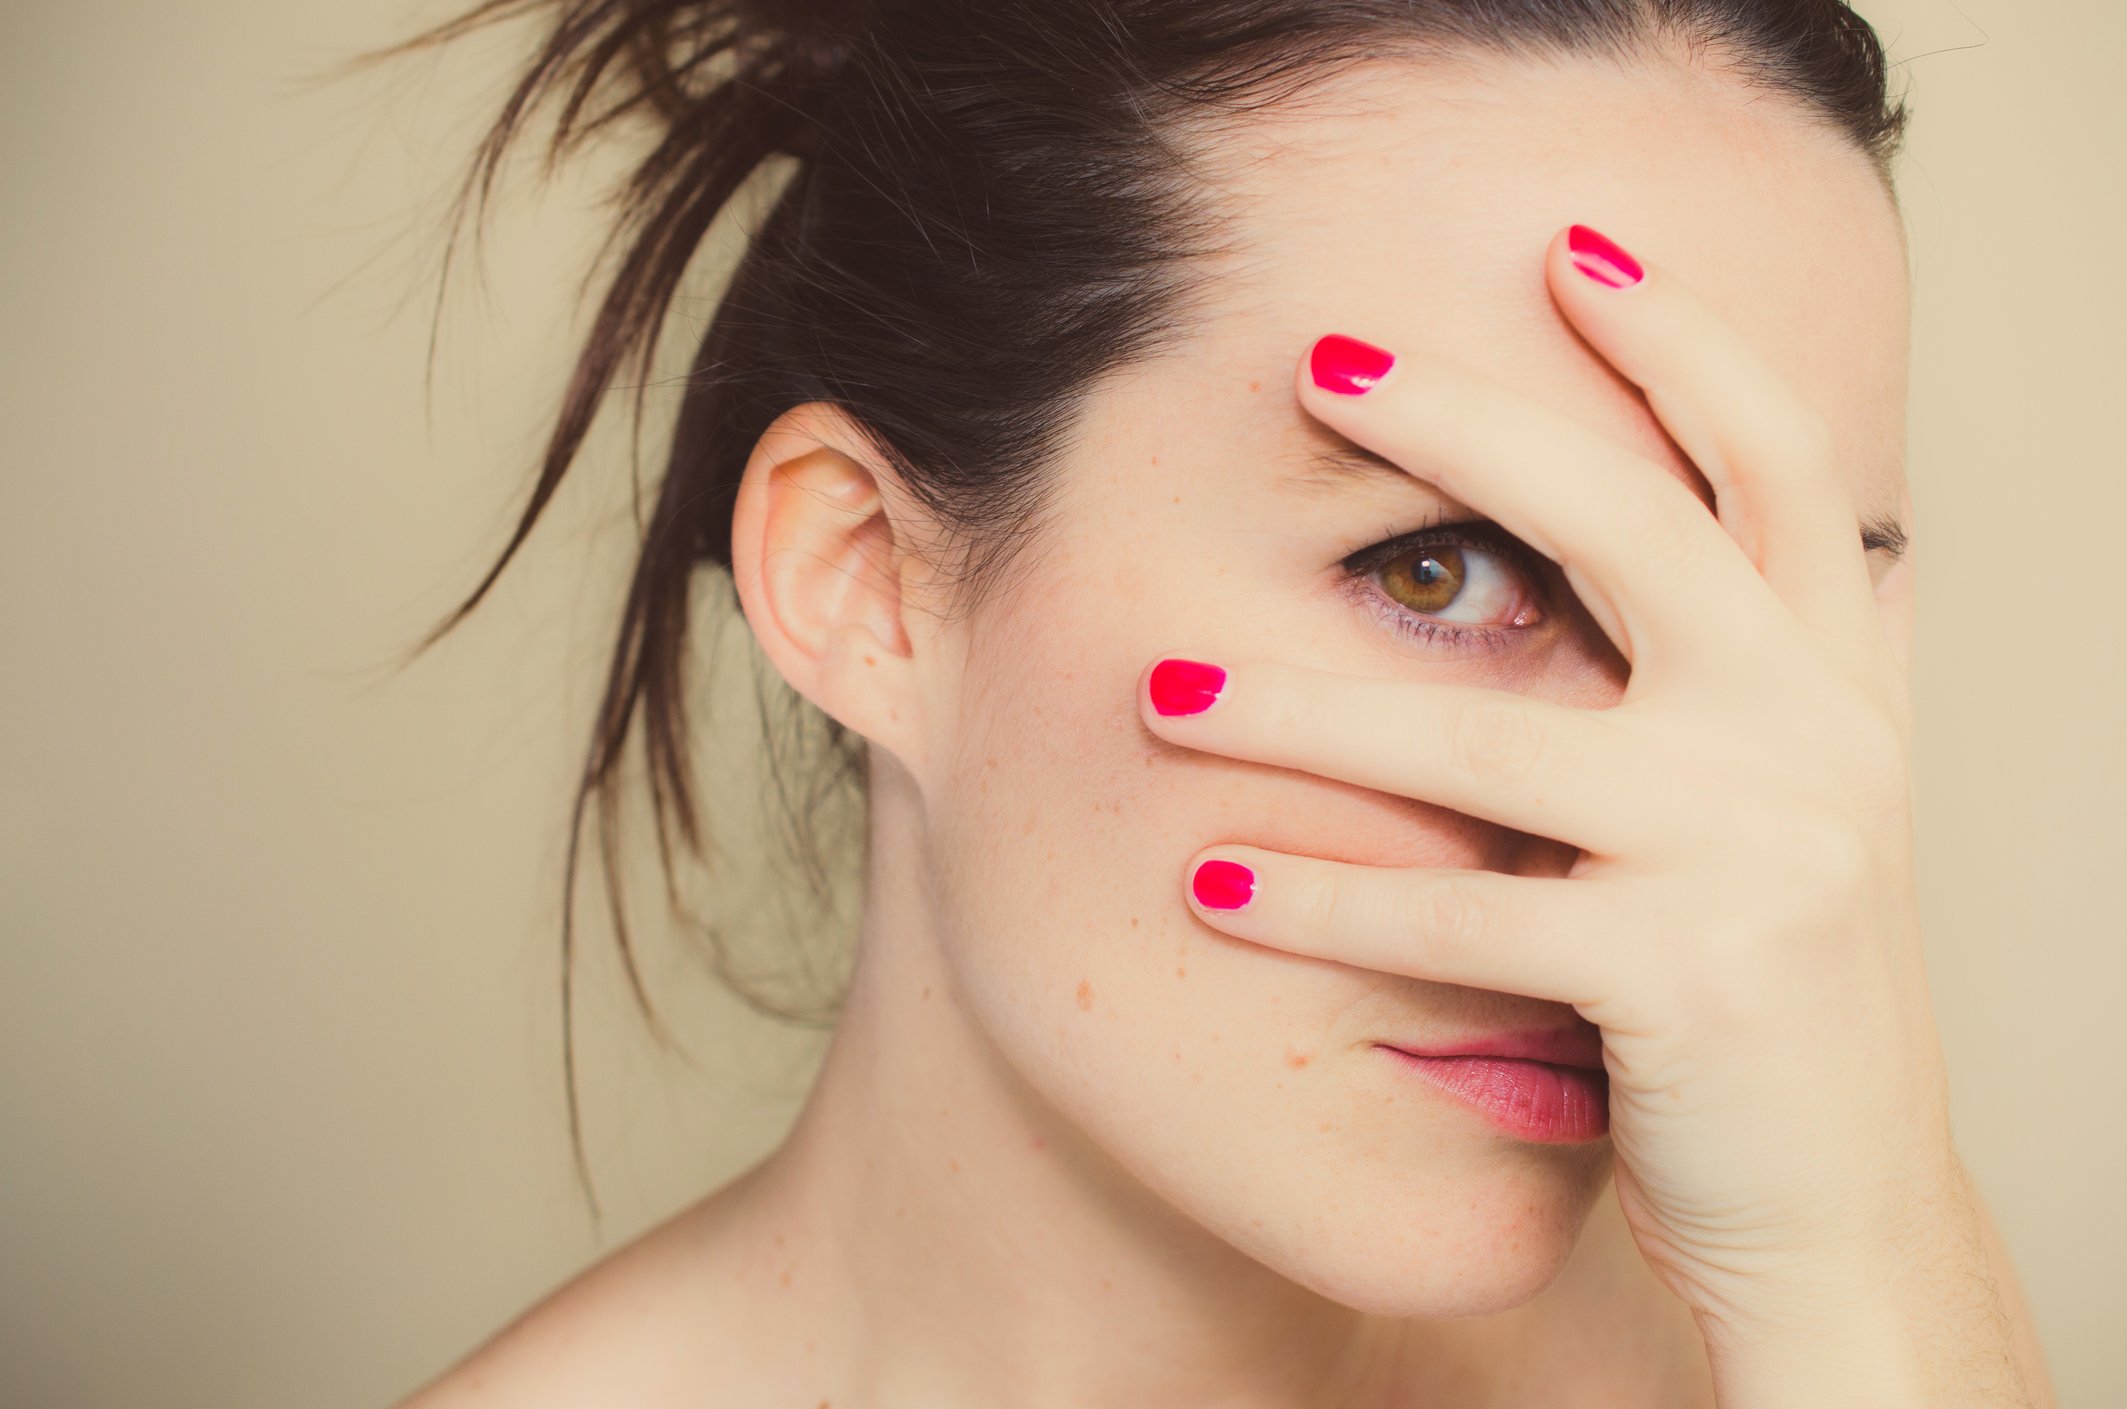 Geheimnisvolles Mädchen mit roten Nägeln und Hand auf Gesicht. I Quelle: Getty Images